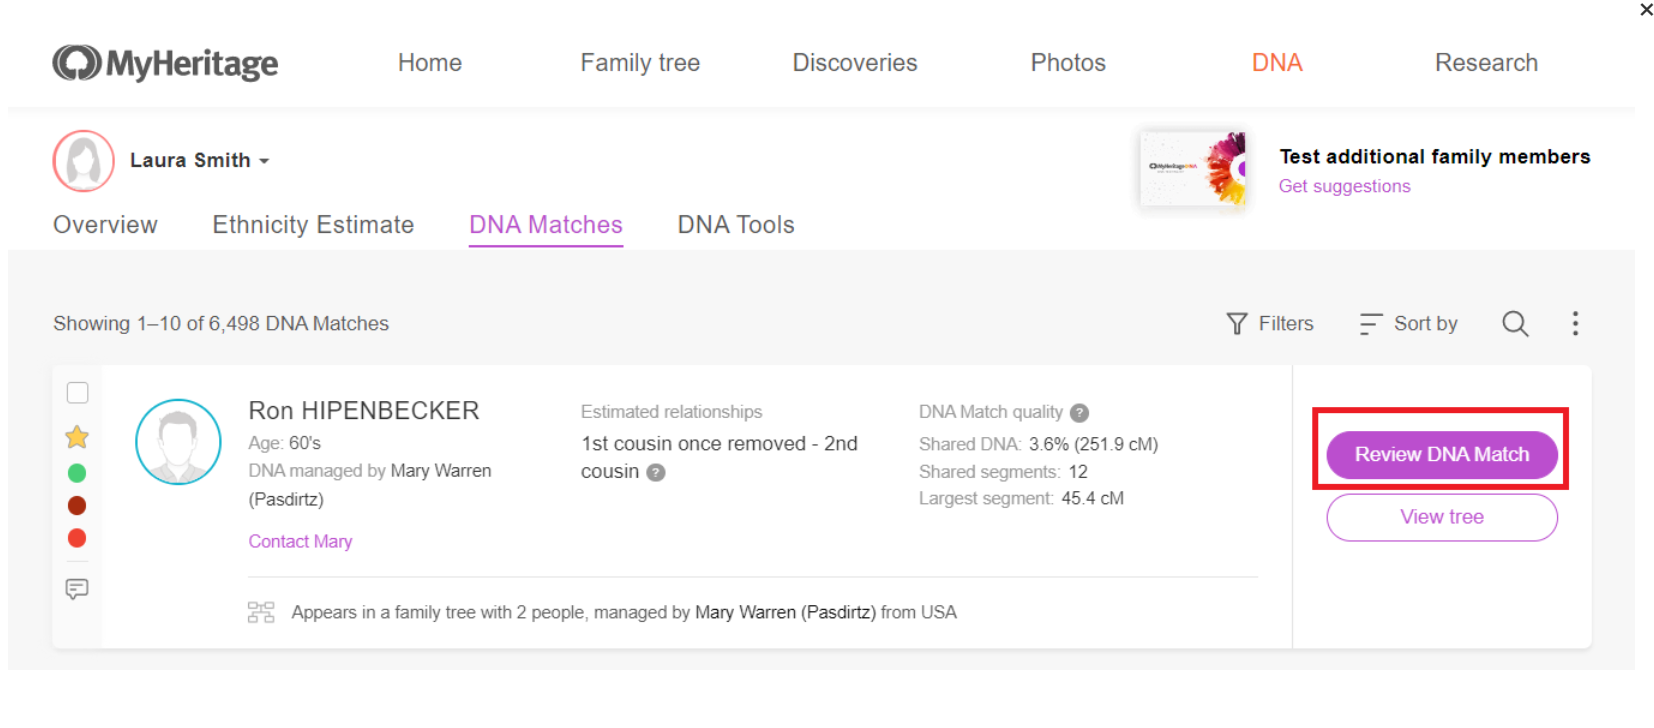 Otwarcie strony Przeglądu dopasowania DNA (kliknij, aby powiększyć)